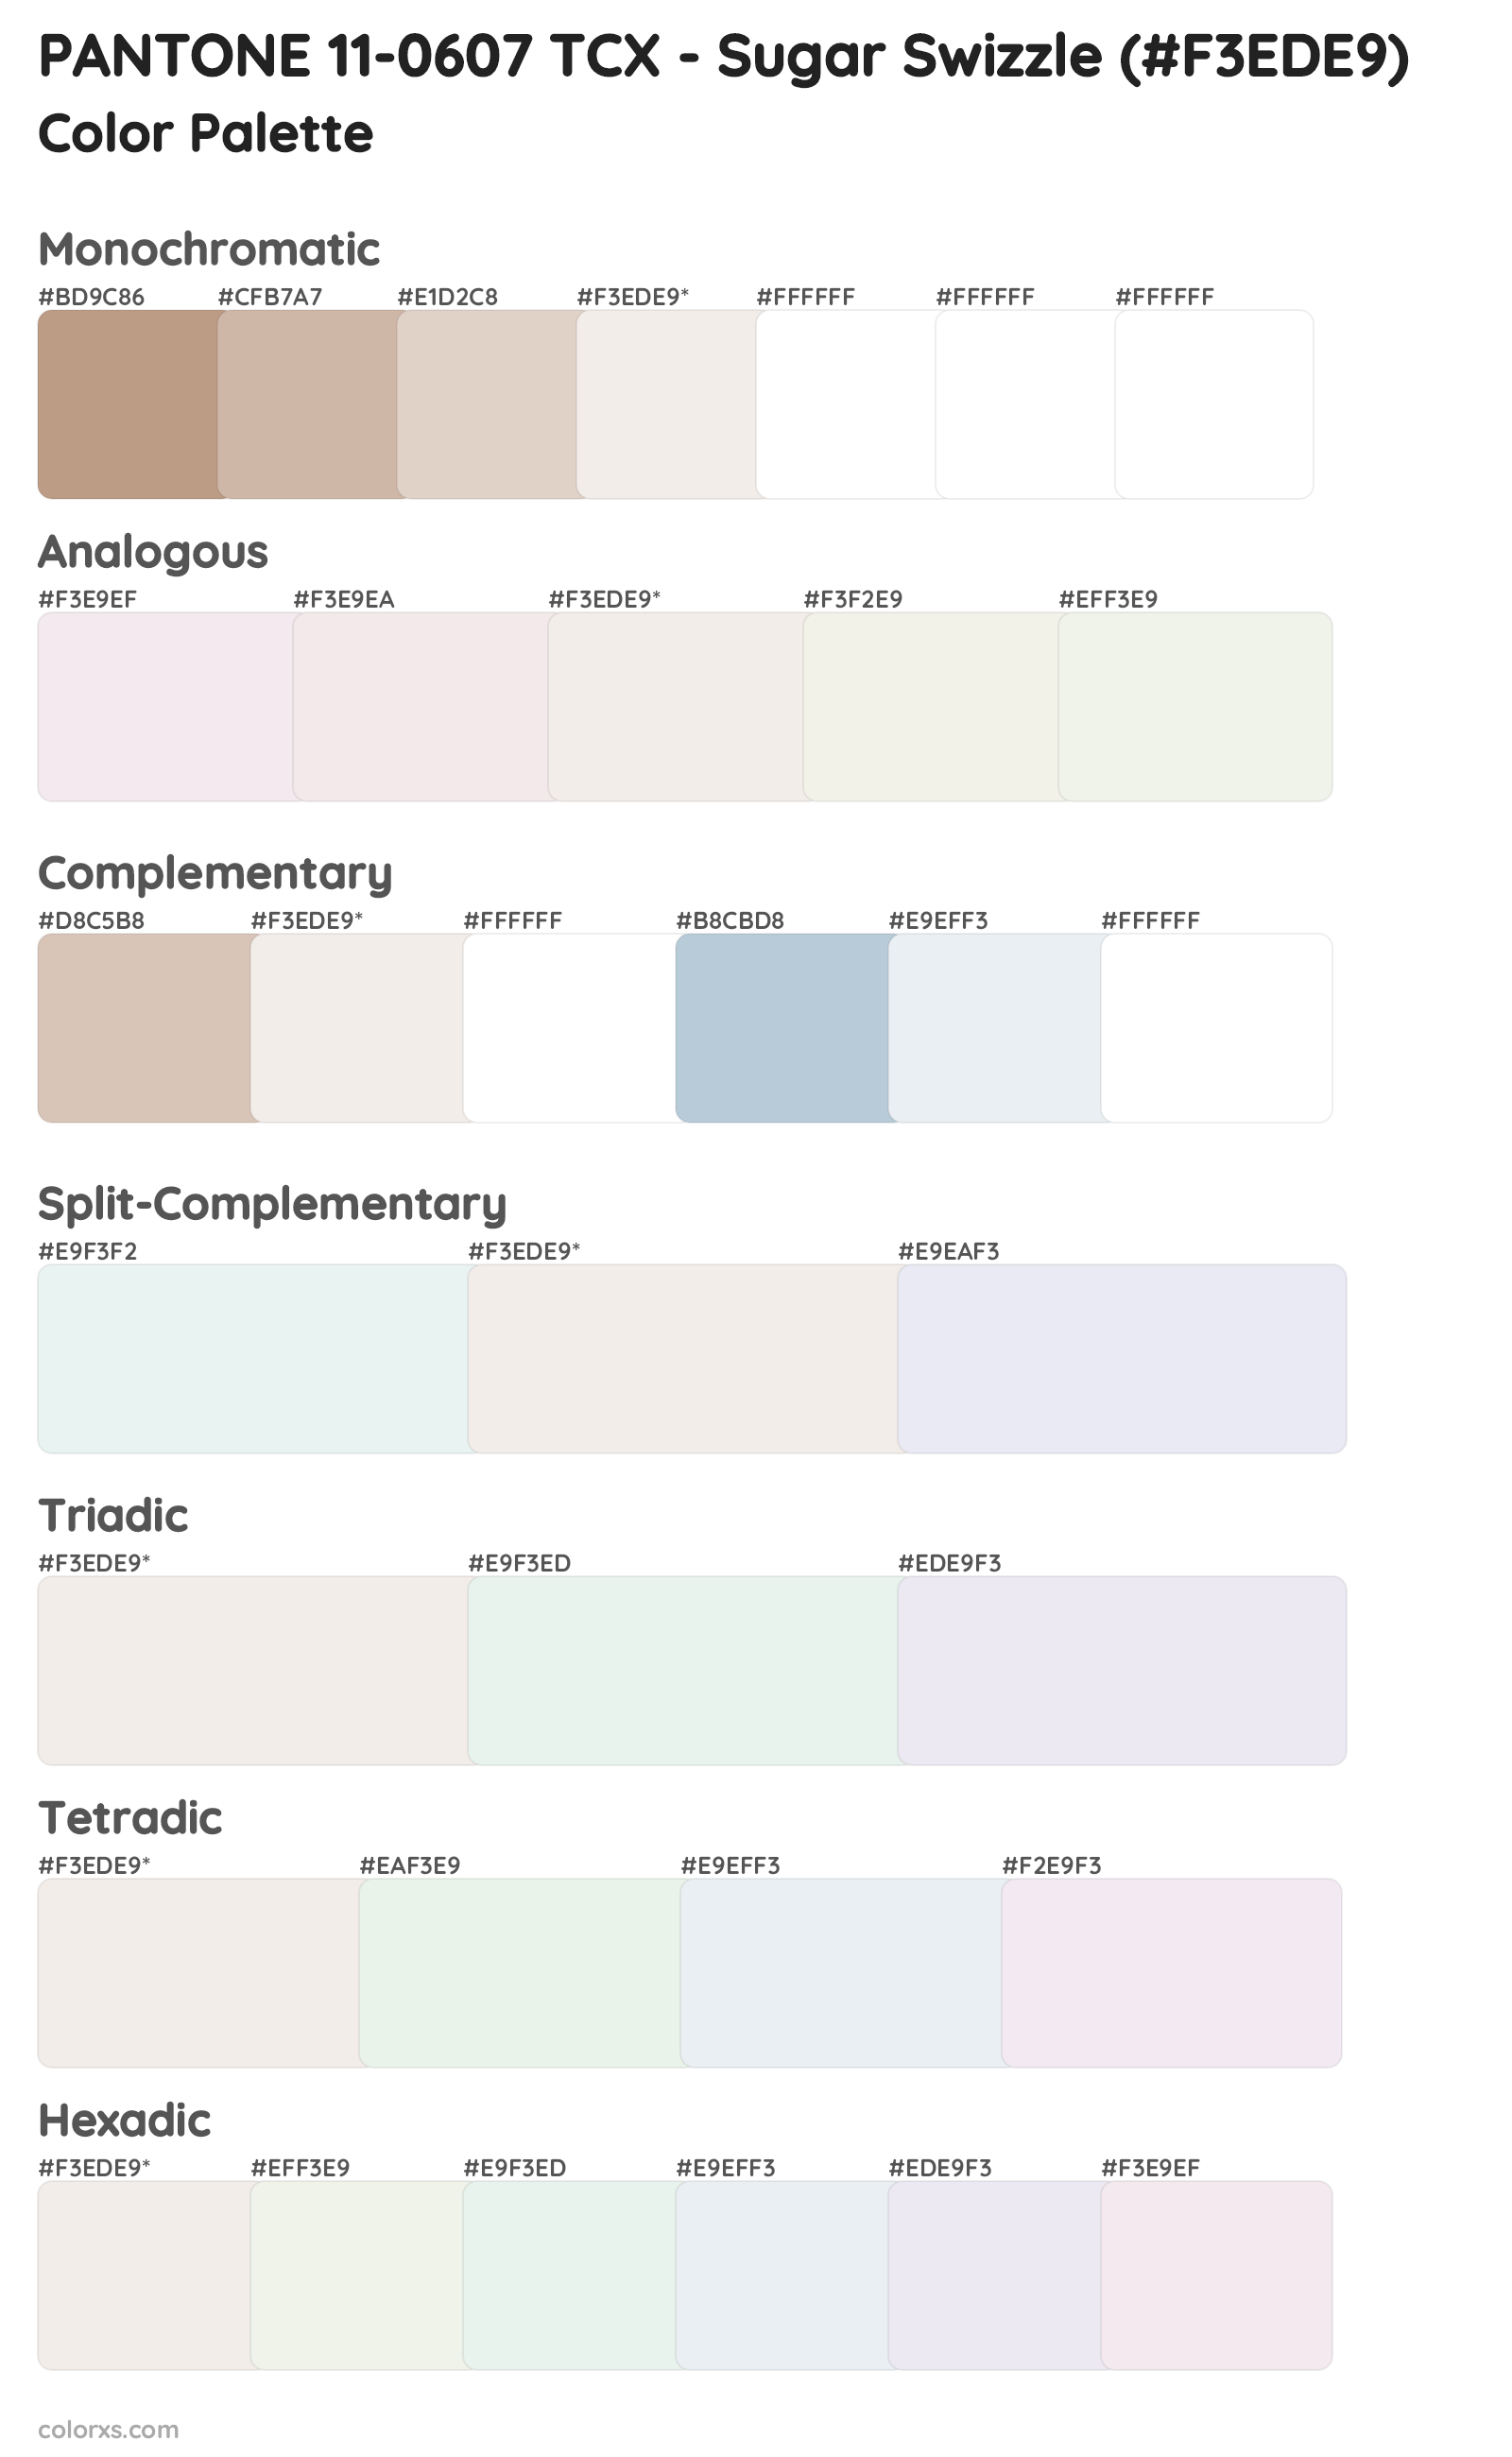 PANTONE 11-0607 TCX - Sugar Swizzle Color Scheme Palettes